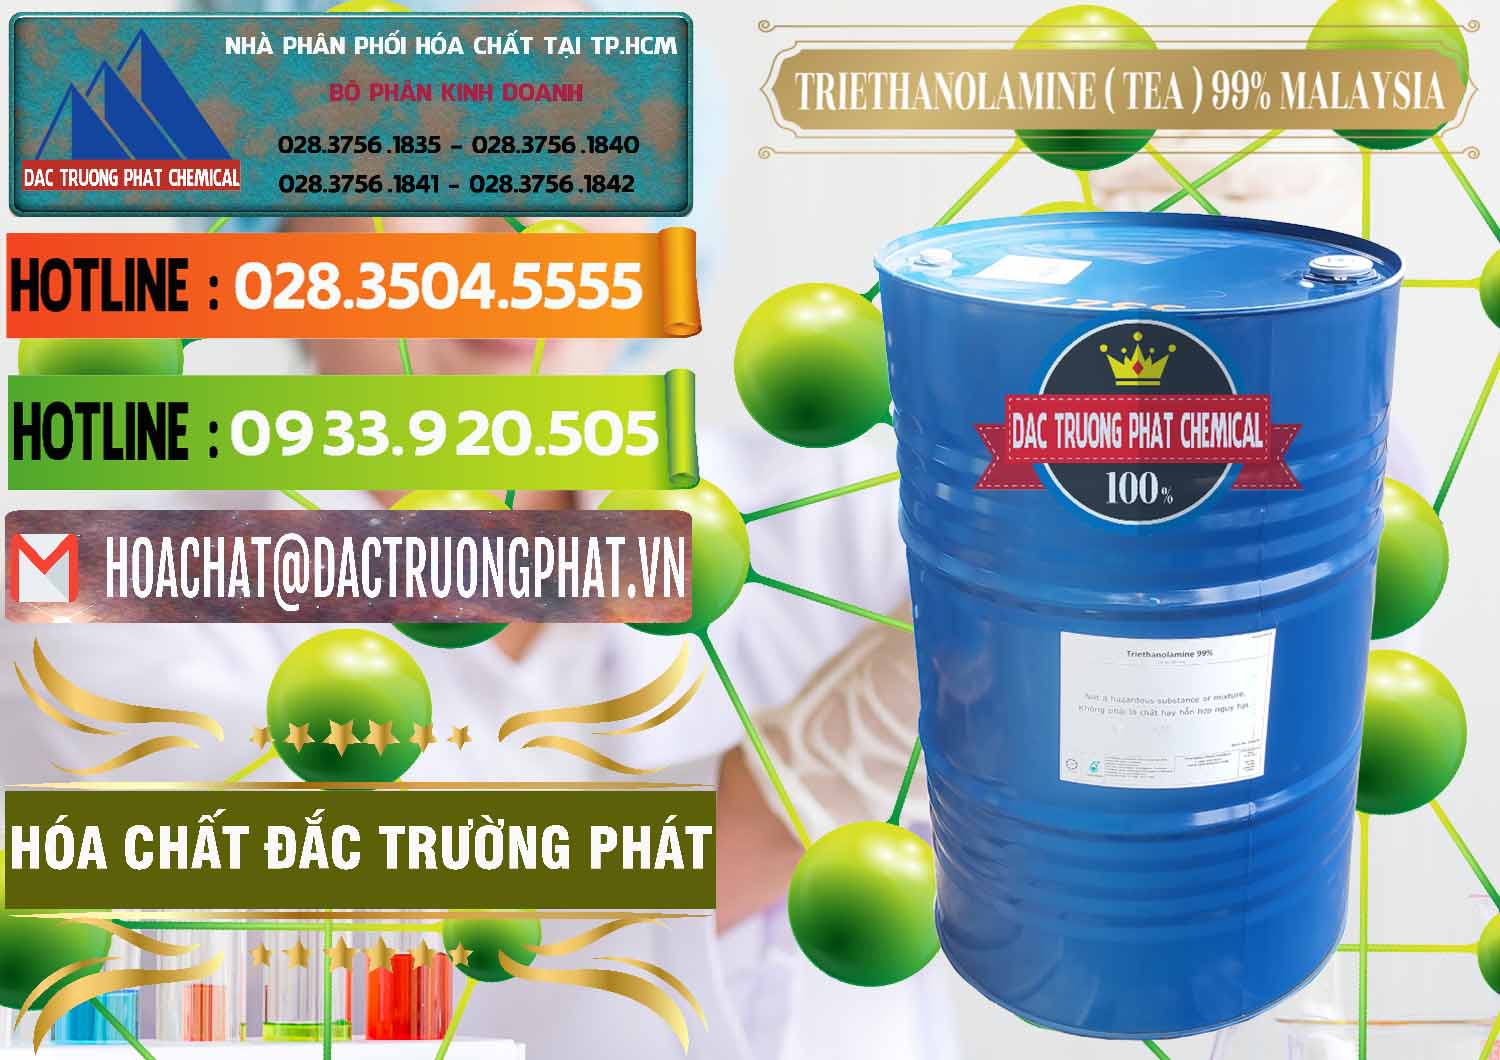 Chuyên phân phối - bán TEA - Triethanolamine 99% Mã Lai Malaysia - 0323 - Cty chuyên phân phối ( bán ) hóa chất tại TP.HCM - cungcaphoachat.com.vn